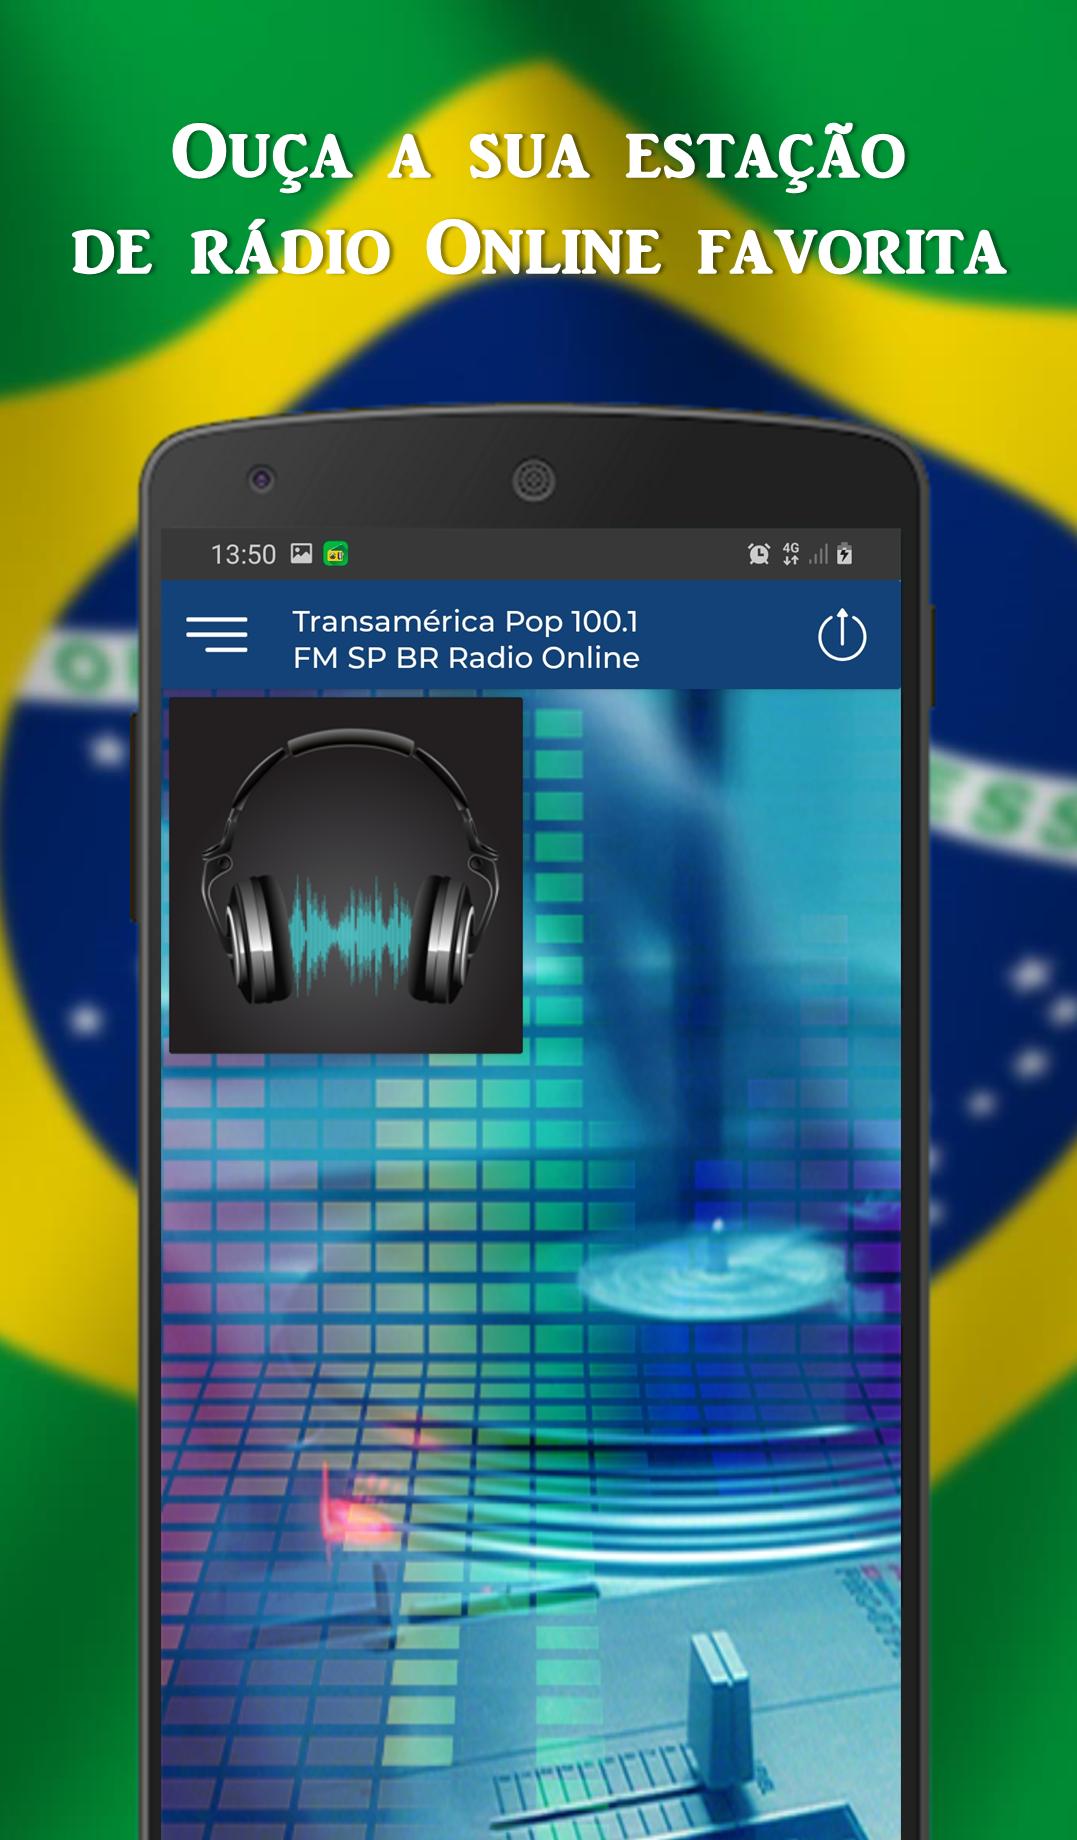 Transamérica Pop 100.1 FM SP - BR Radio Online for Android - APK Download